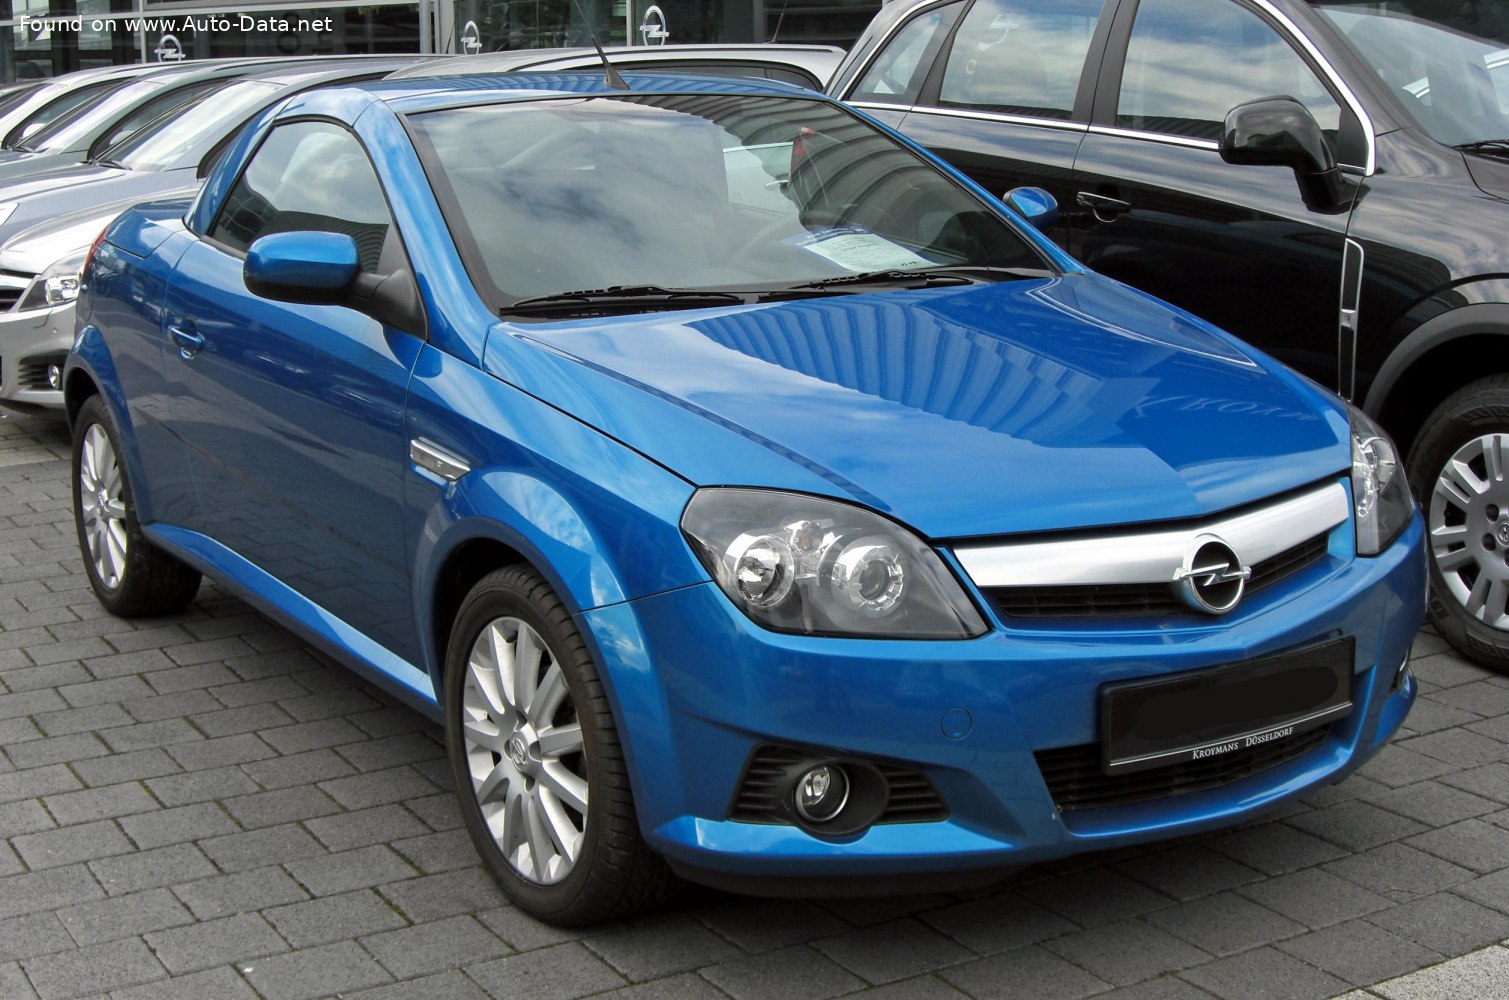 https://www.auto-data.net/images/f90/Opel-Tigra-B-TwinTop.jpg